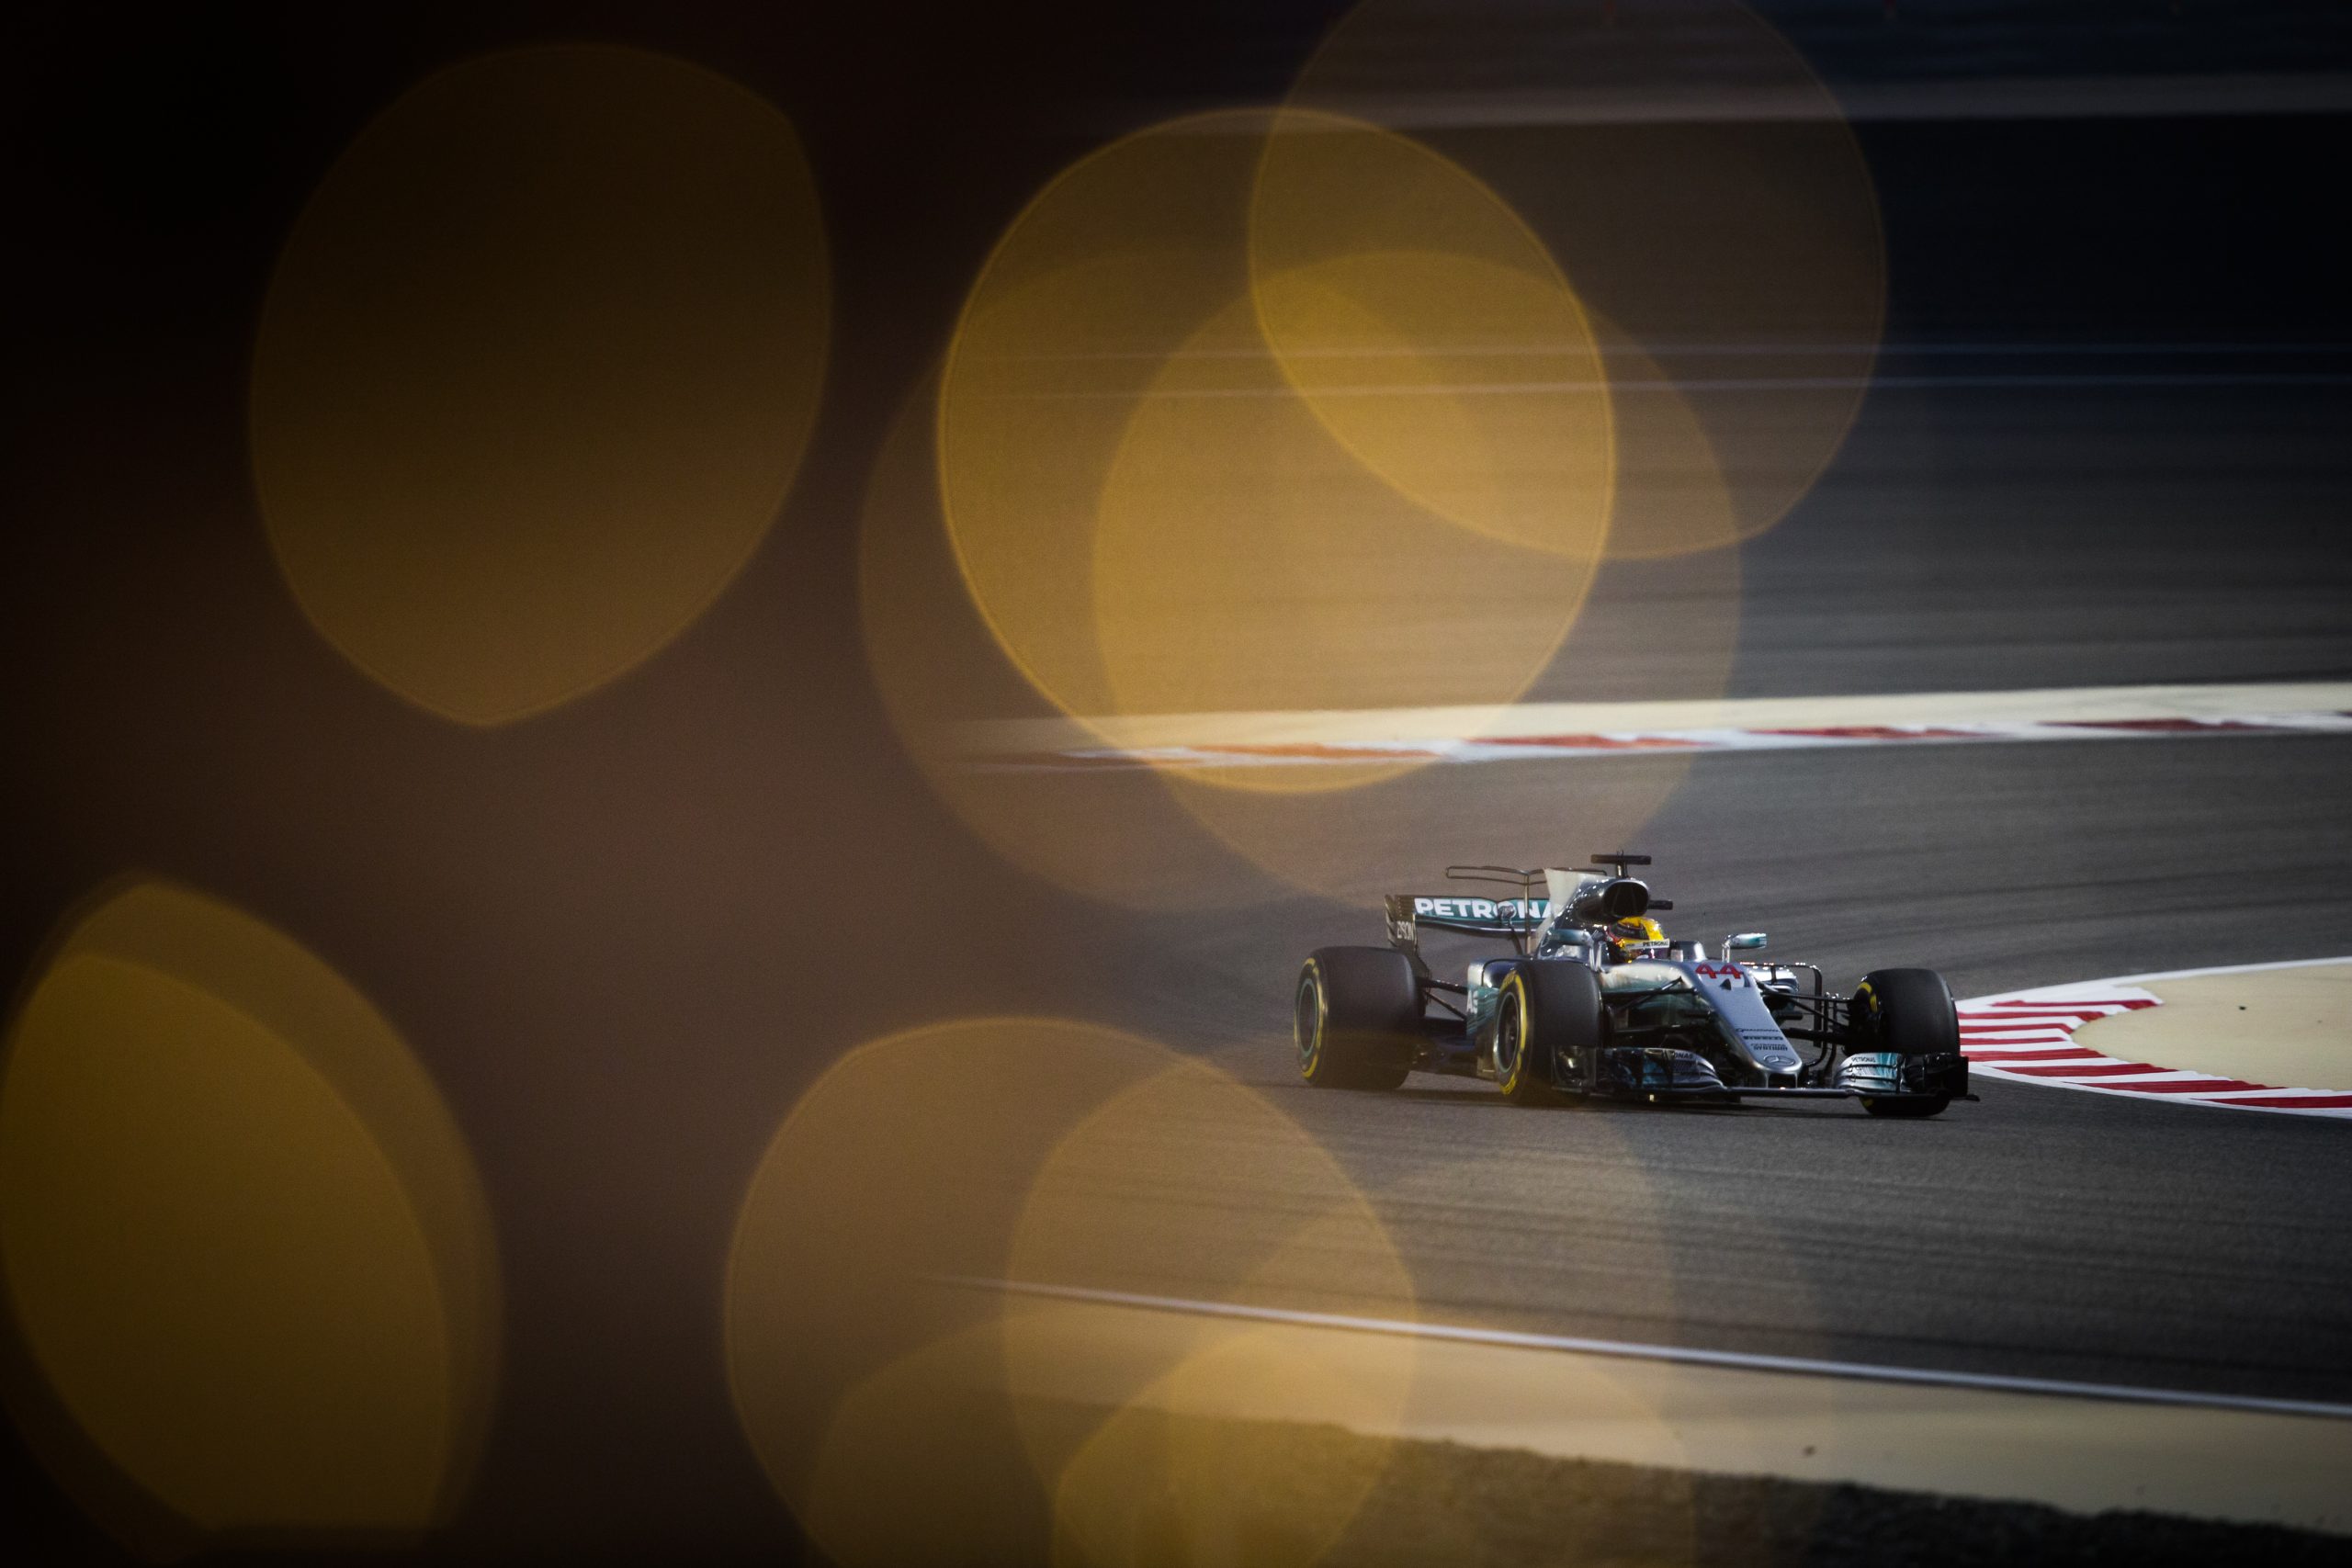 F1 – BAHRAIN GRAND PRIX 2017